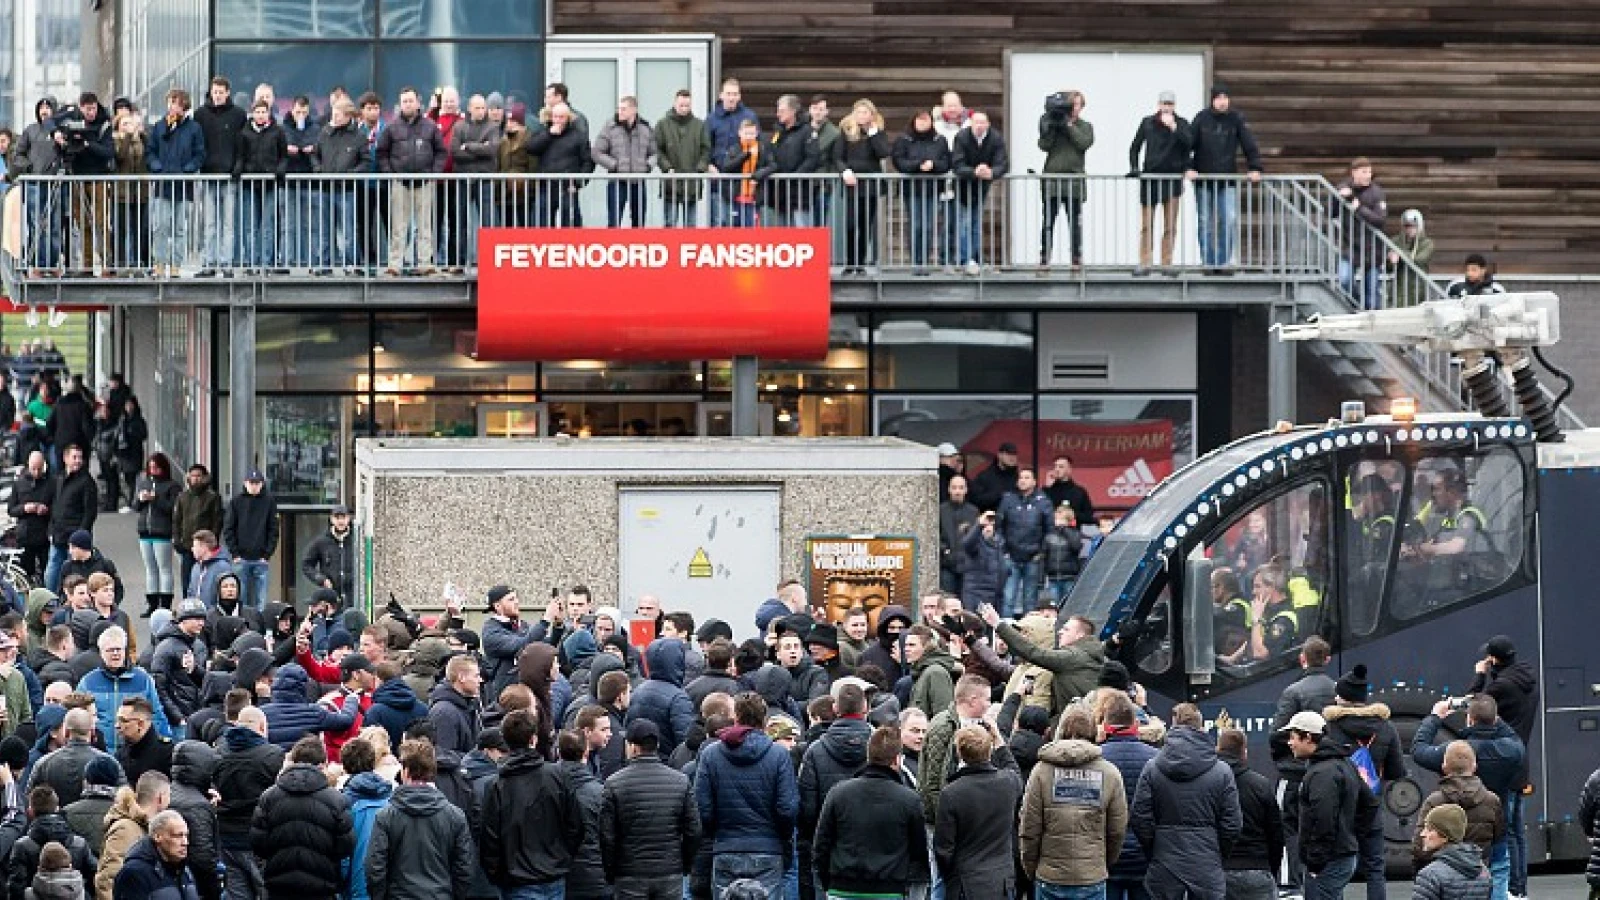 Donderdag debat over massa-arrestatie Feyenoord supporters